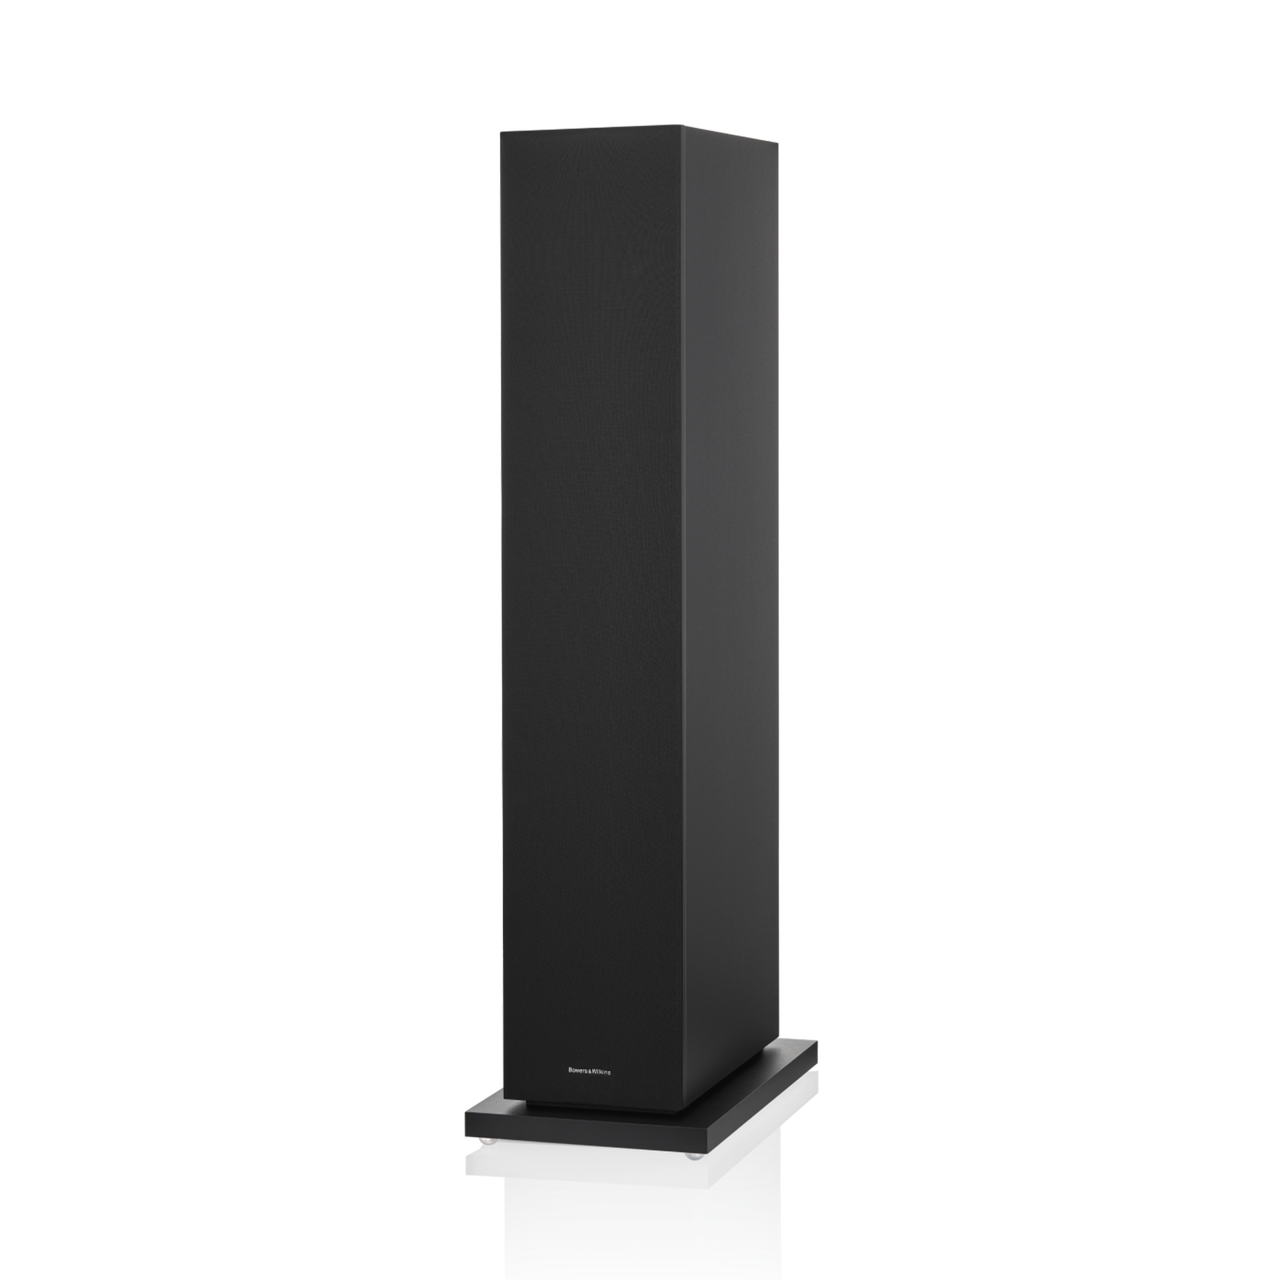 Marantz CD 50N Network CD Player + Marantz MODEL 50 AMPLIFIER + Bower & Wilkins 603 S3 Floorstanding Speaker (Black)